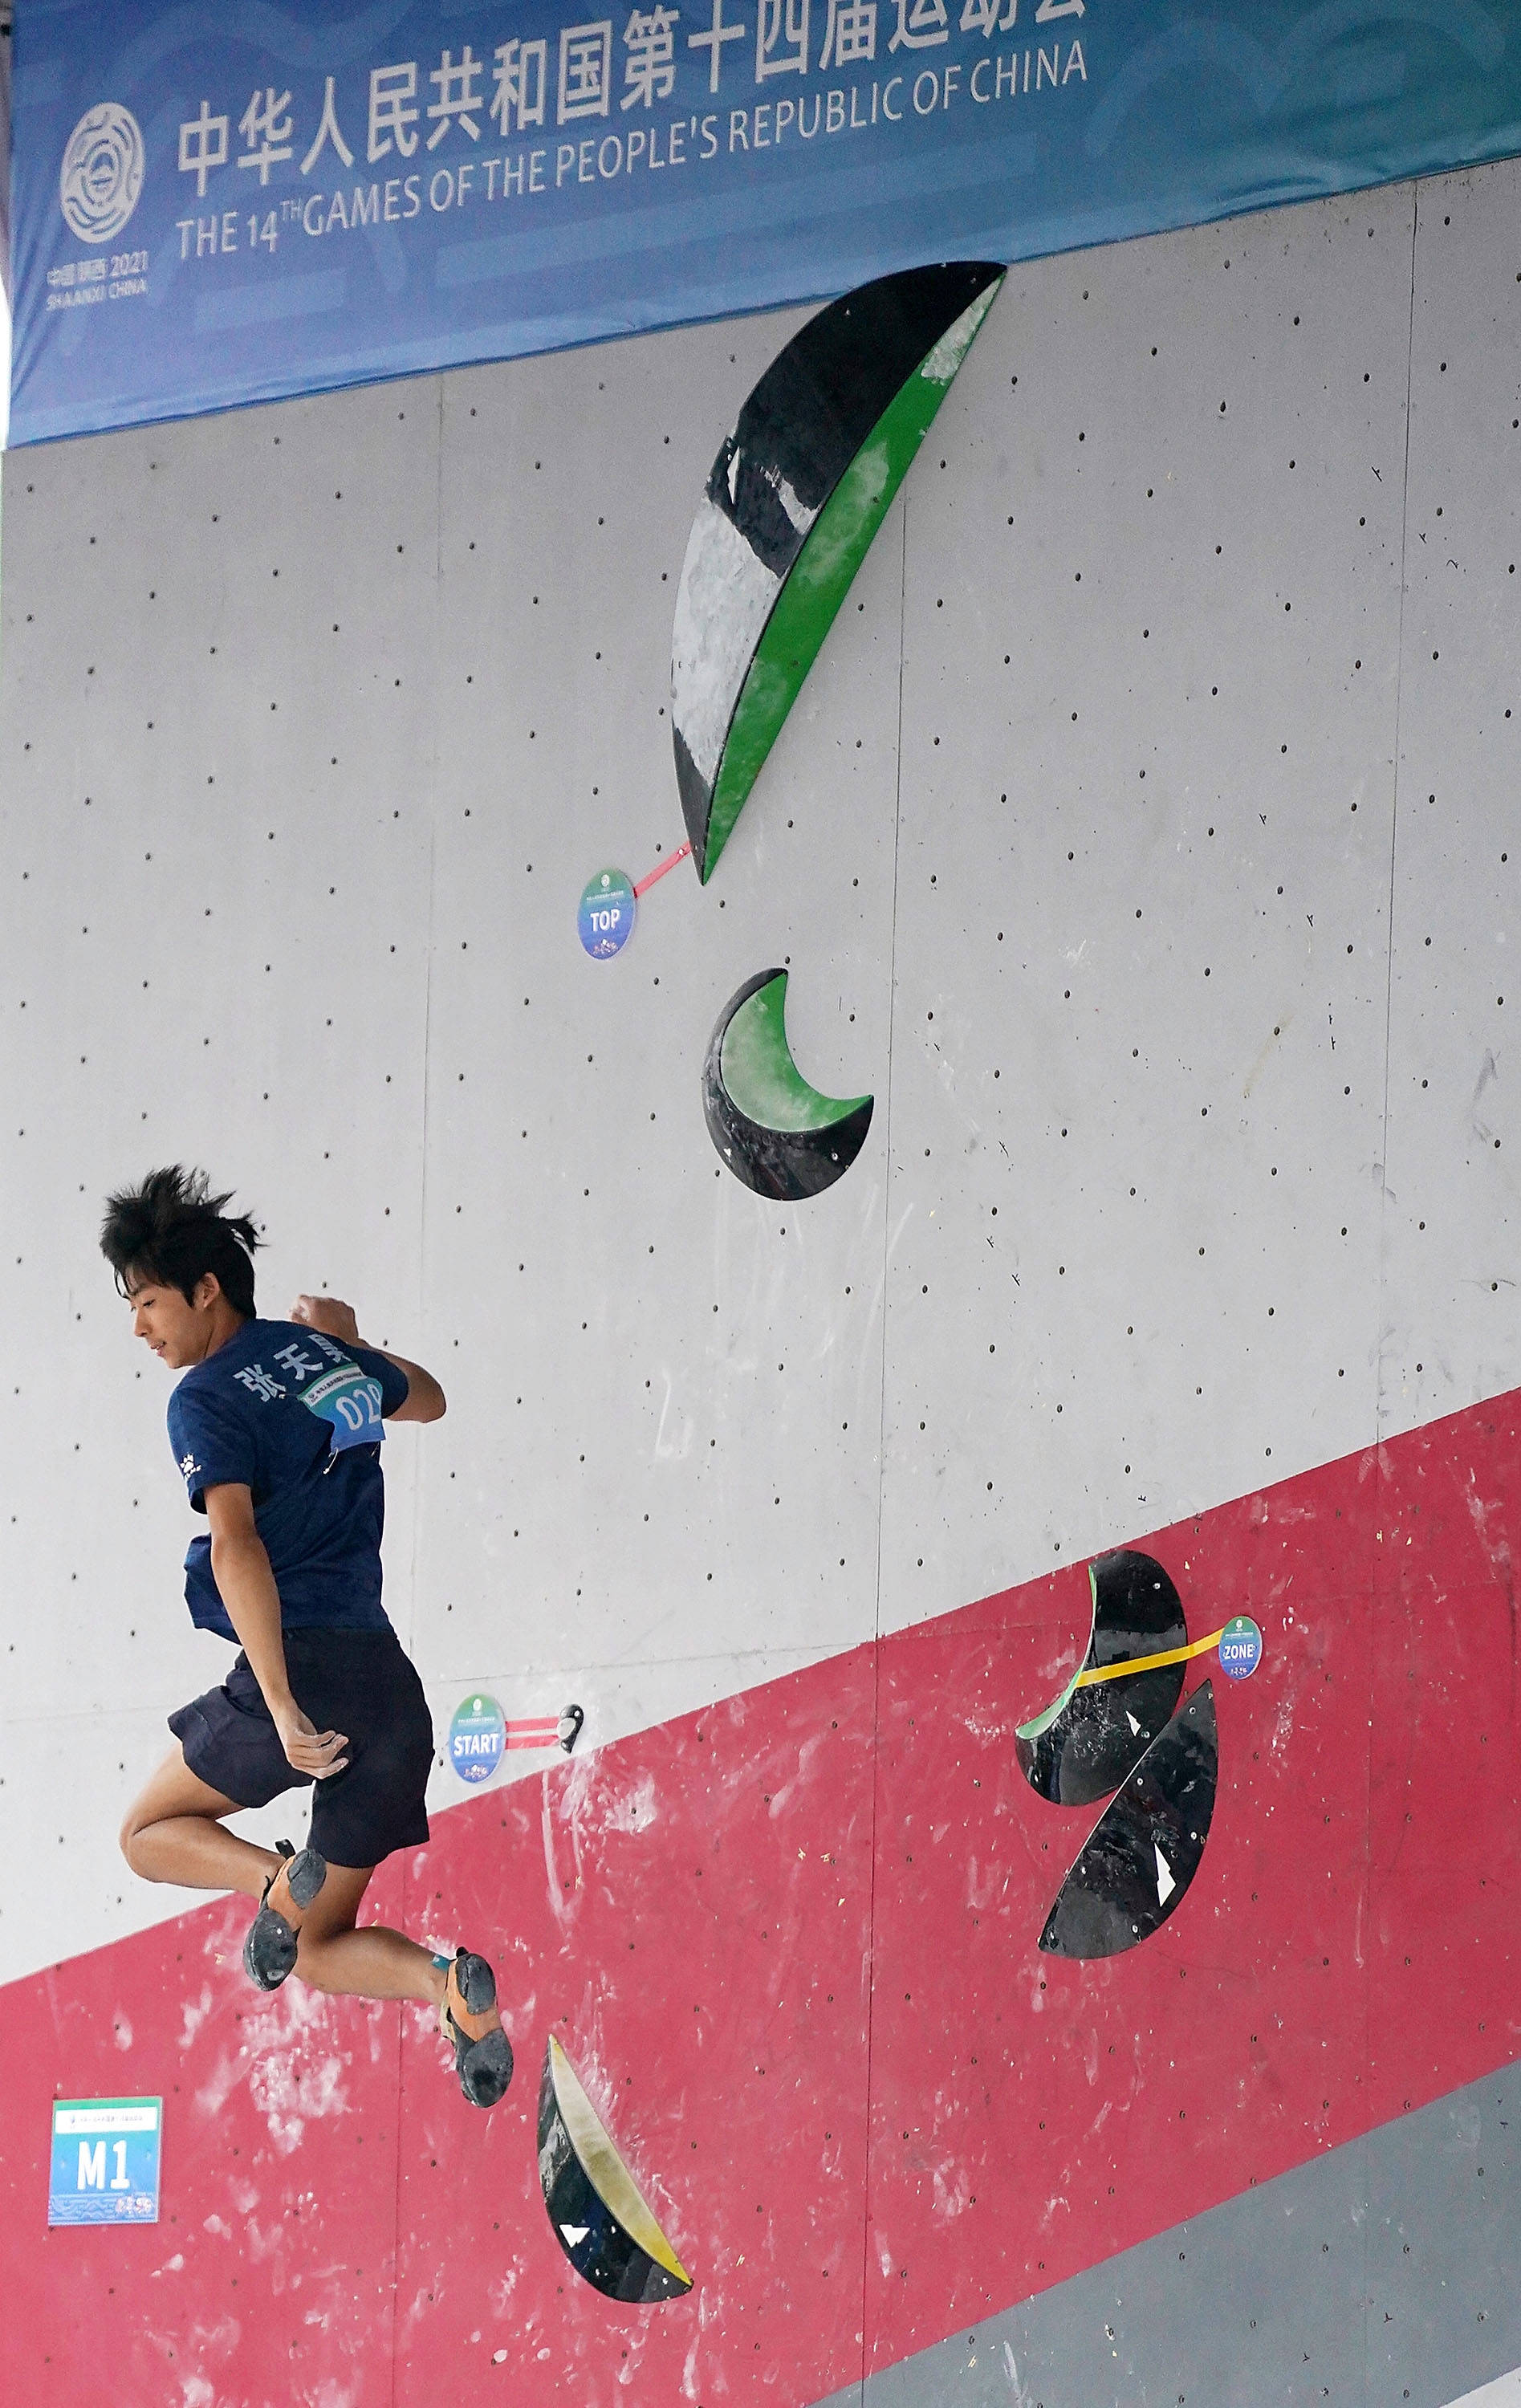 9月17日,江苏队选手张天昊在攀石赛中.